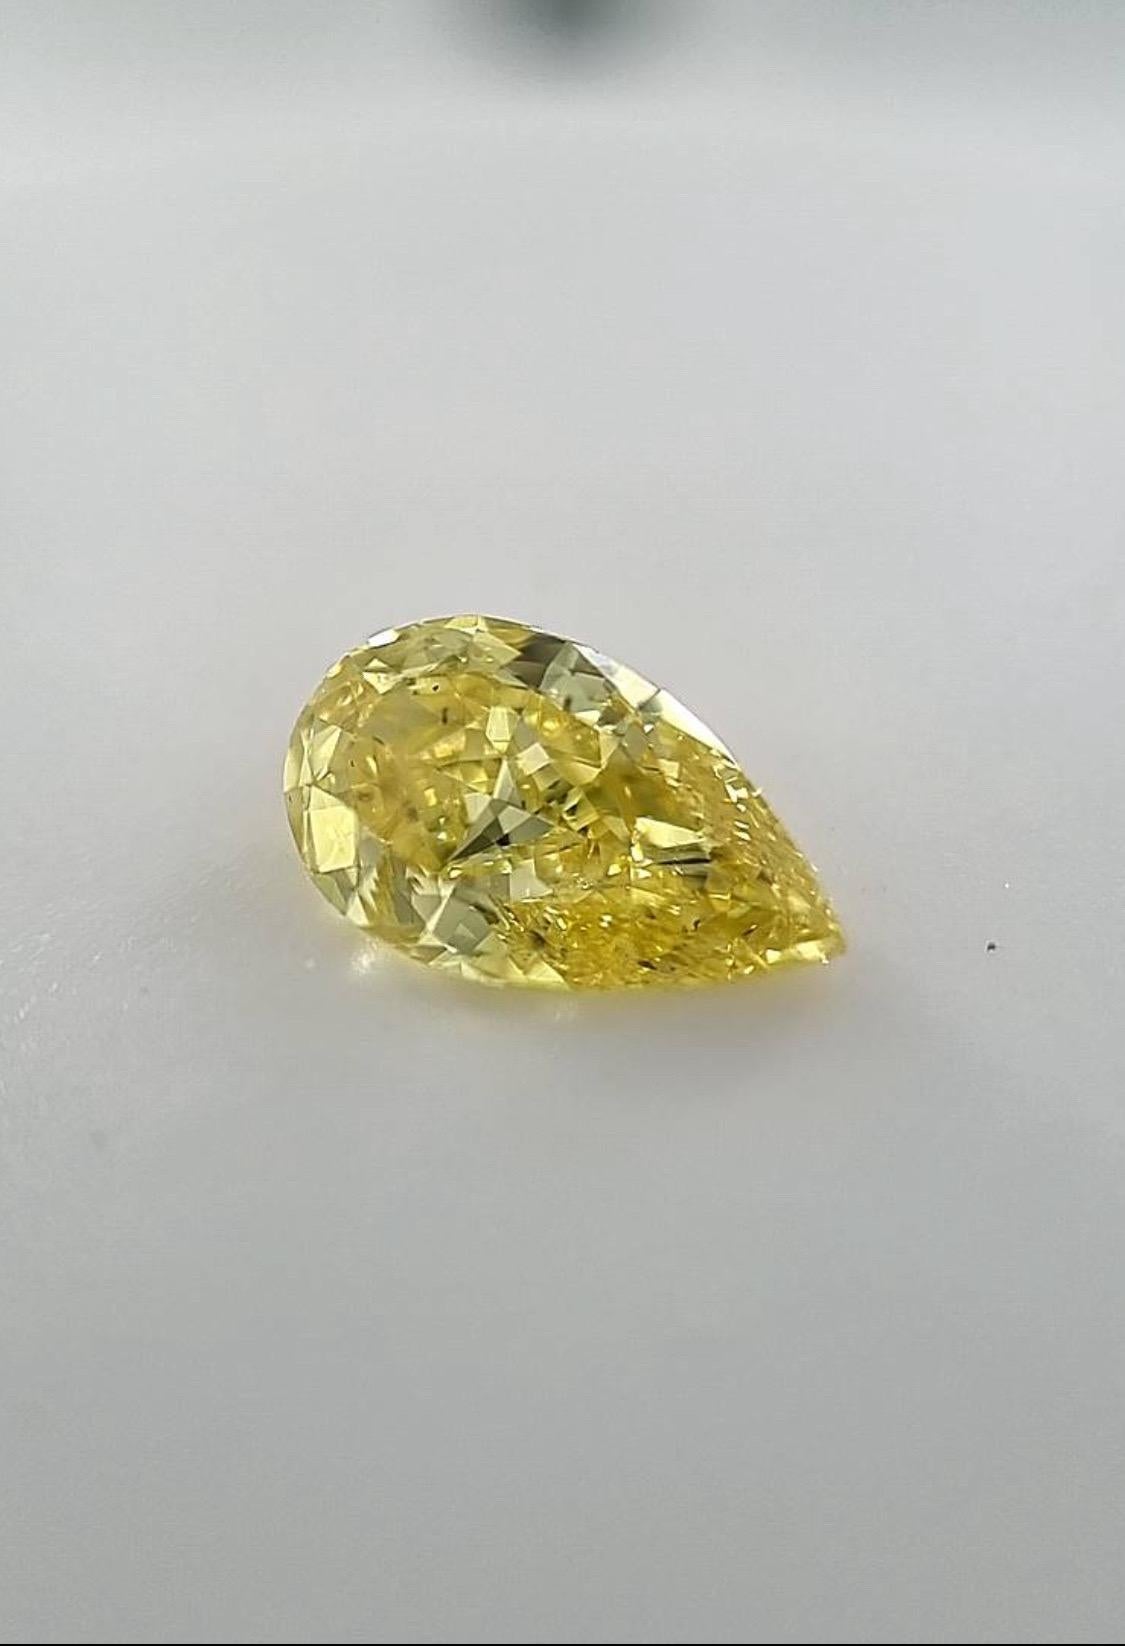 Un magnifique diamant naturel de couleur jaune vif d'un peu plus de 1,00 carat. 
Certifié GIA.  

La pierre est disponible en vrac ou peut être transformée en un bijou de haute joaillerie sur mesure, tel qu'un pendentif, une bague, des boucles